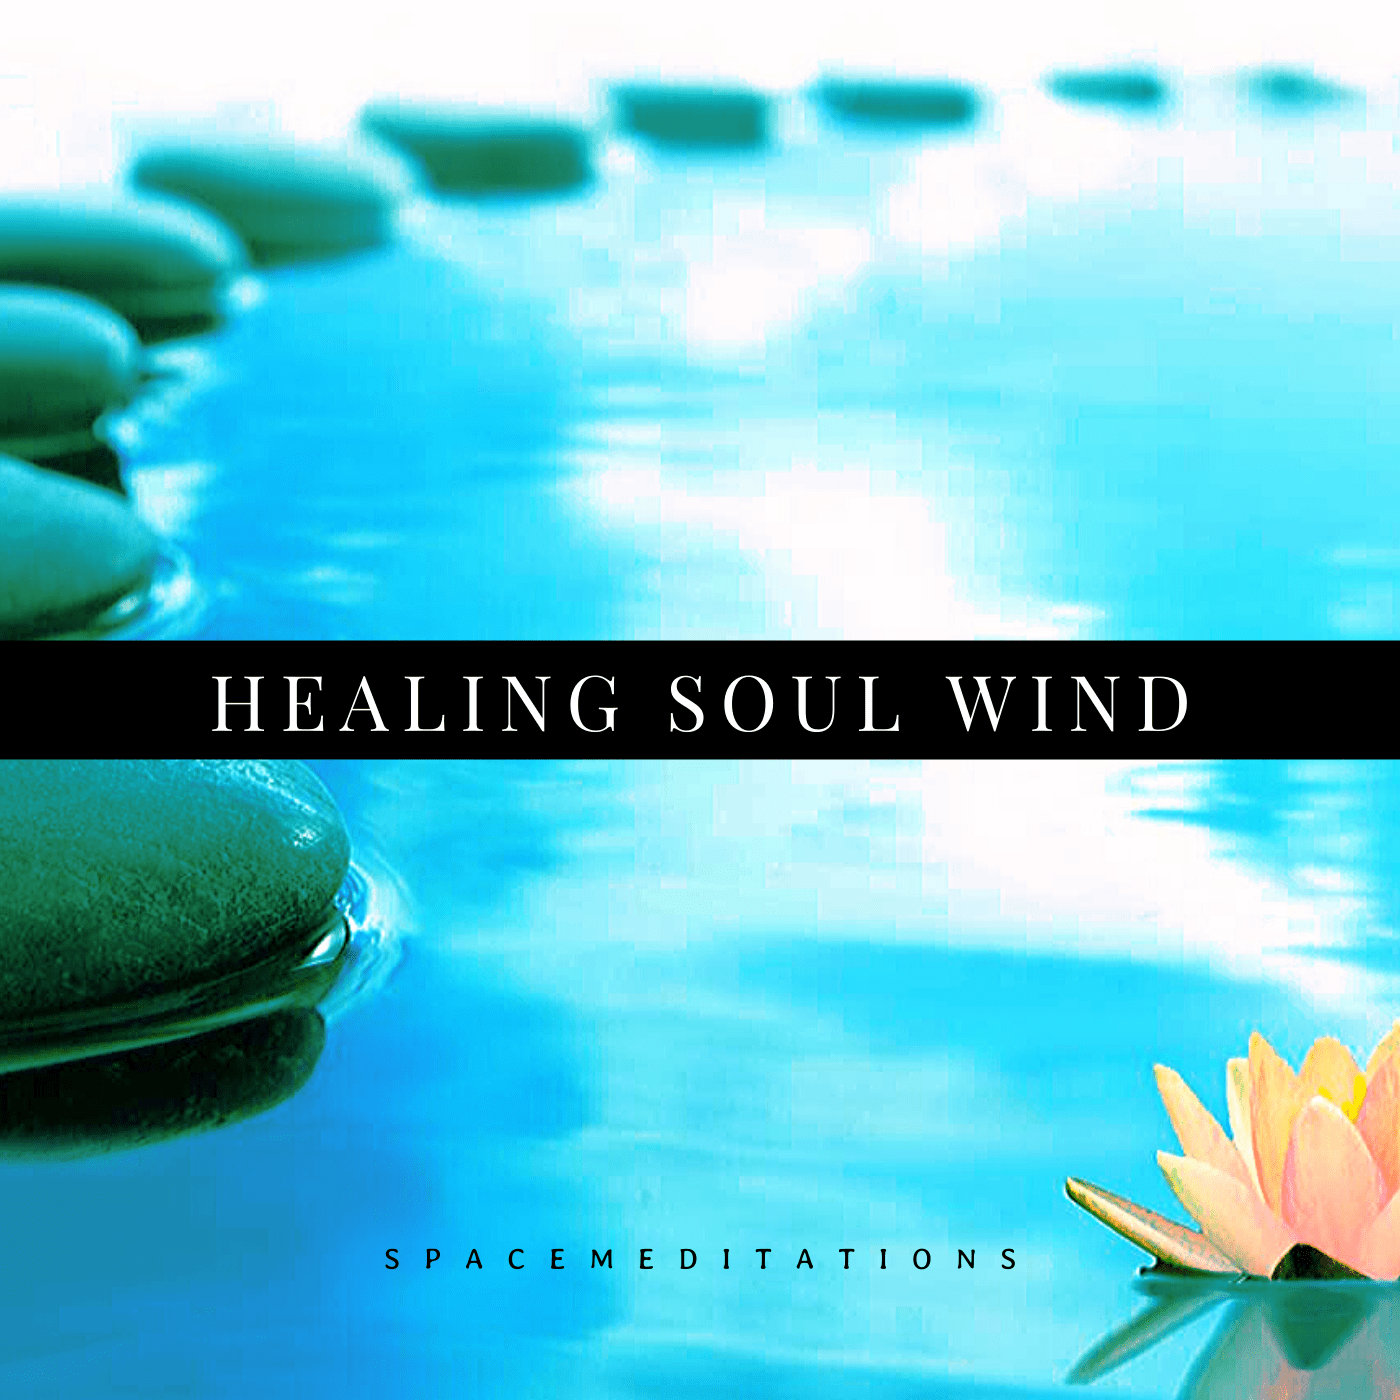 Healing soul wind